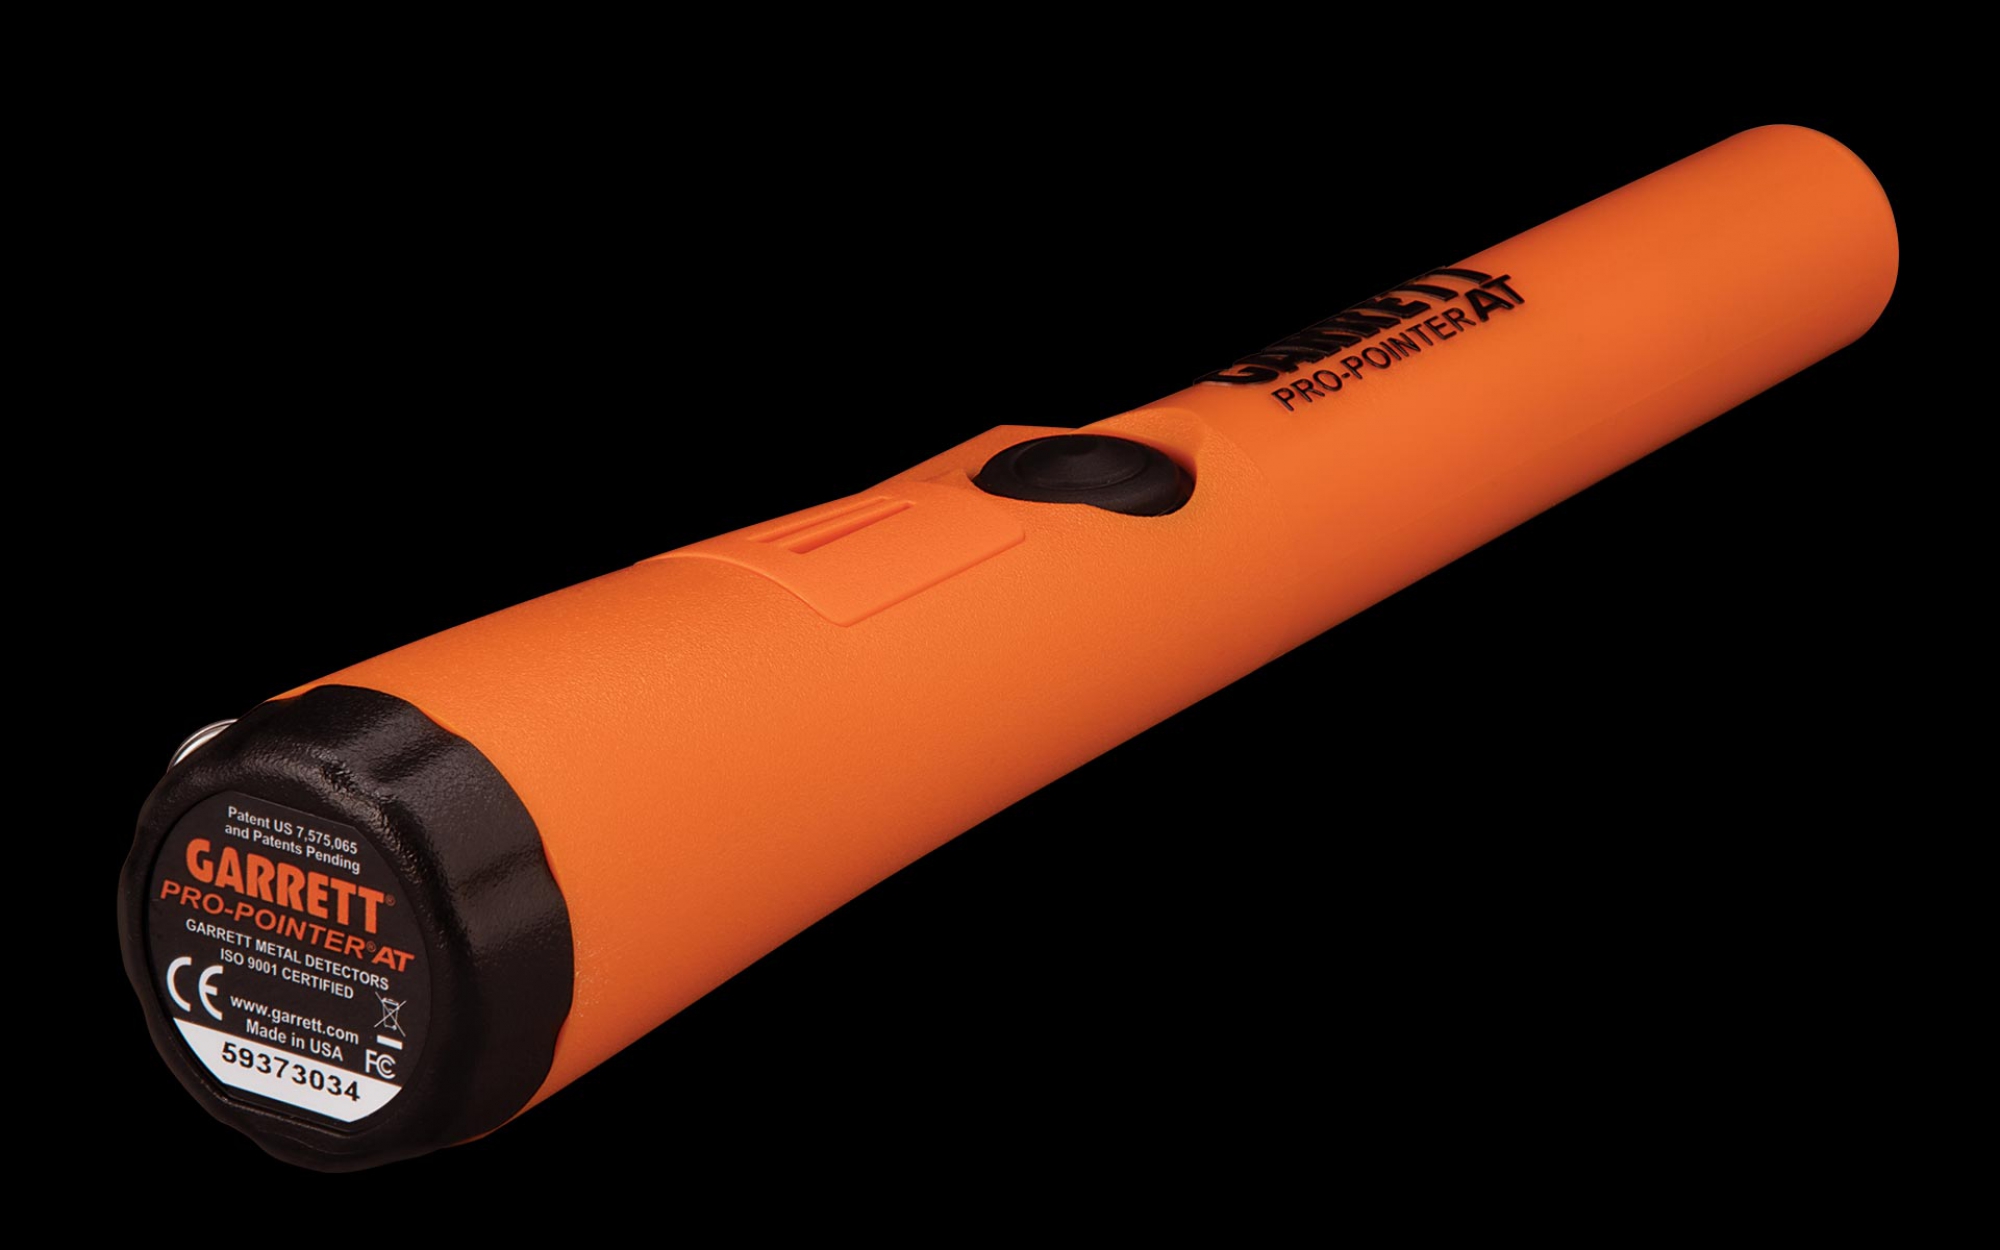 Garret 1140900 Pinpointing Metal Detector Waterproof Battery Powered Orange New 